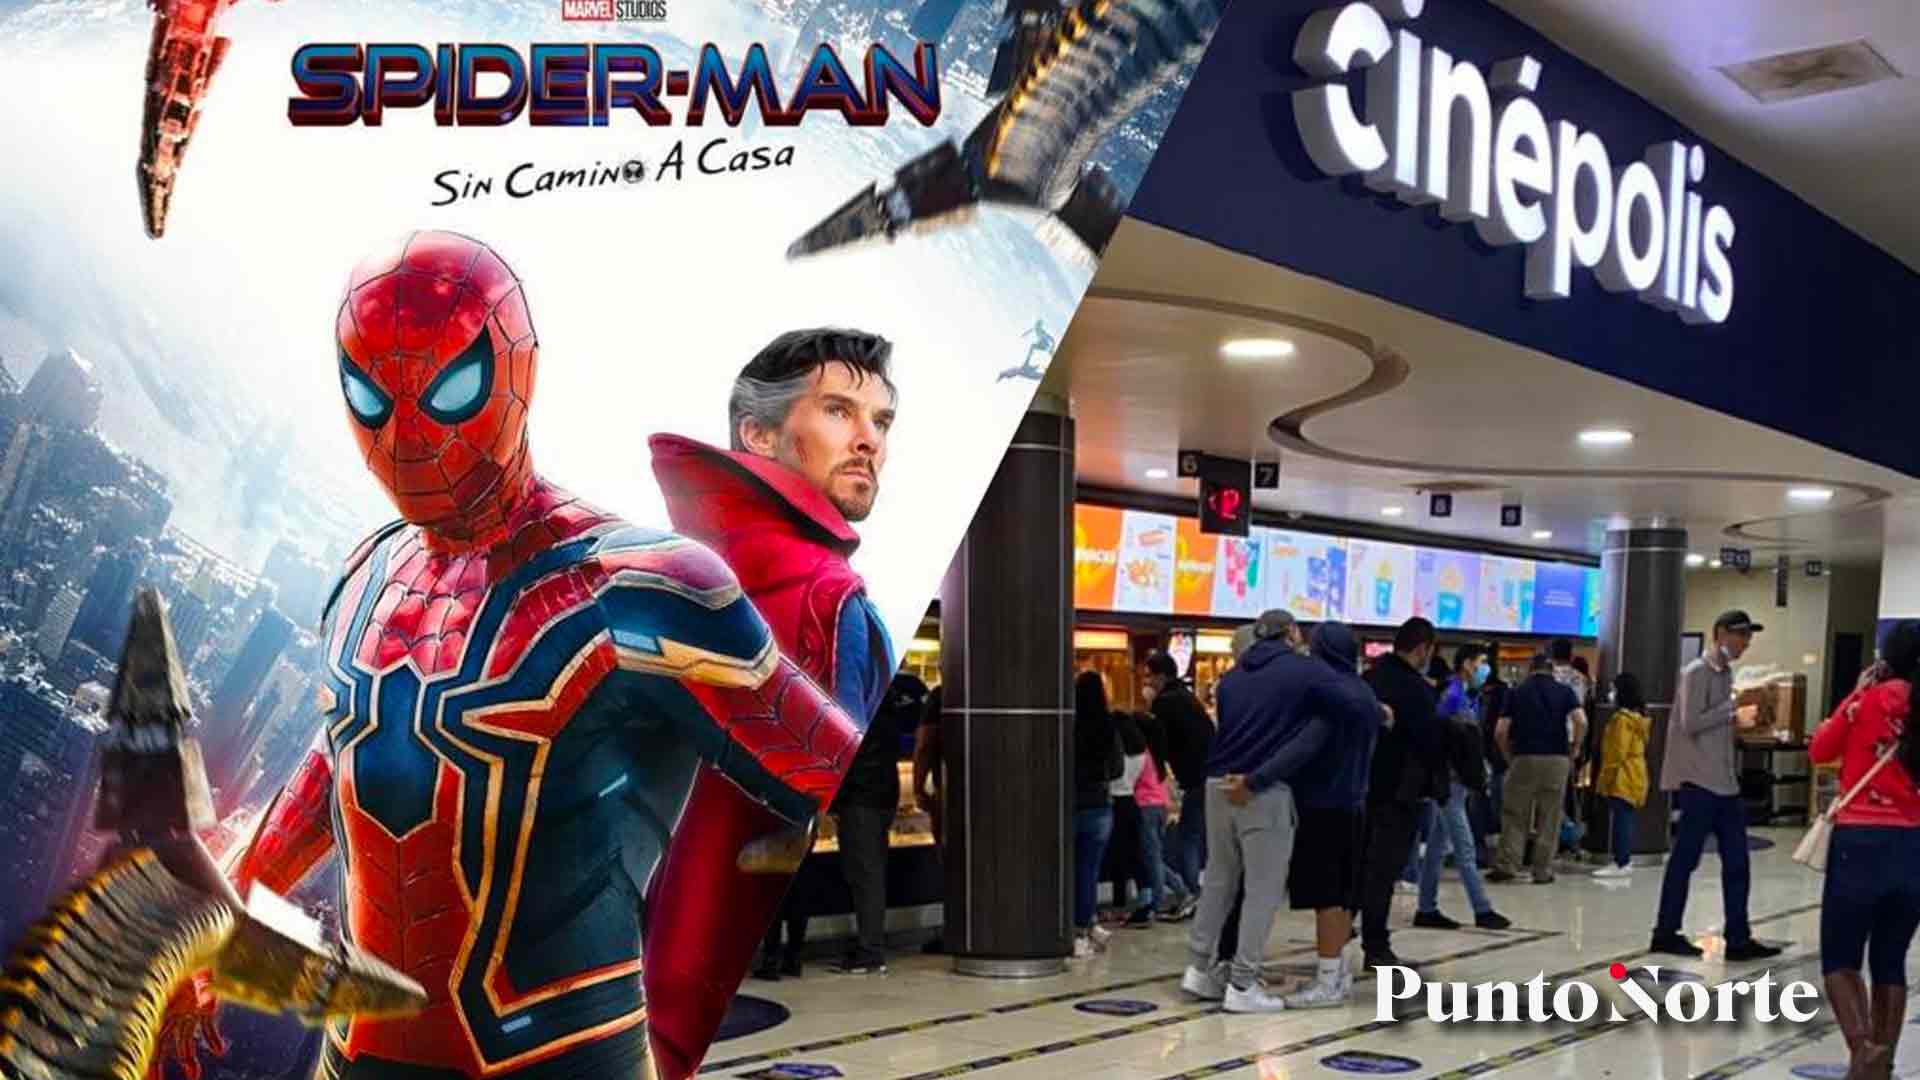 Ya tienes tus boletos para la premier de Spider-Man: No way home? Hoy  inició la preventa en Cinépolis Río - Punto Norte